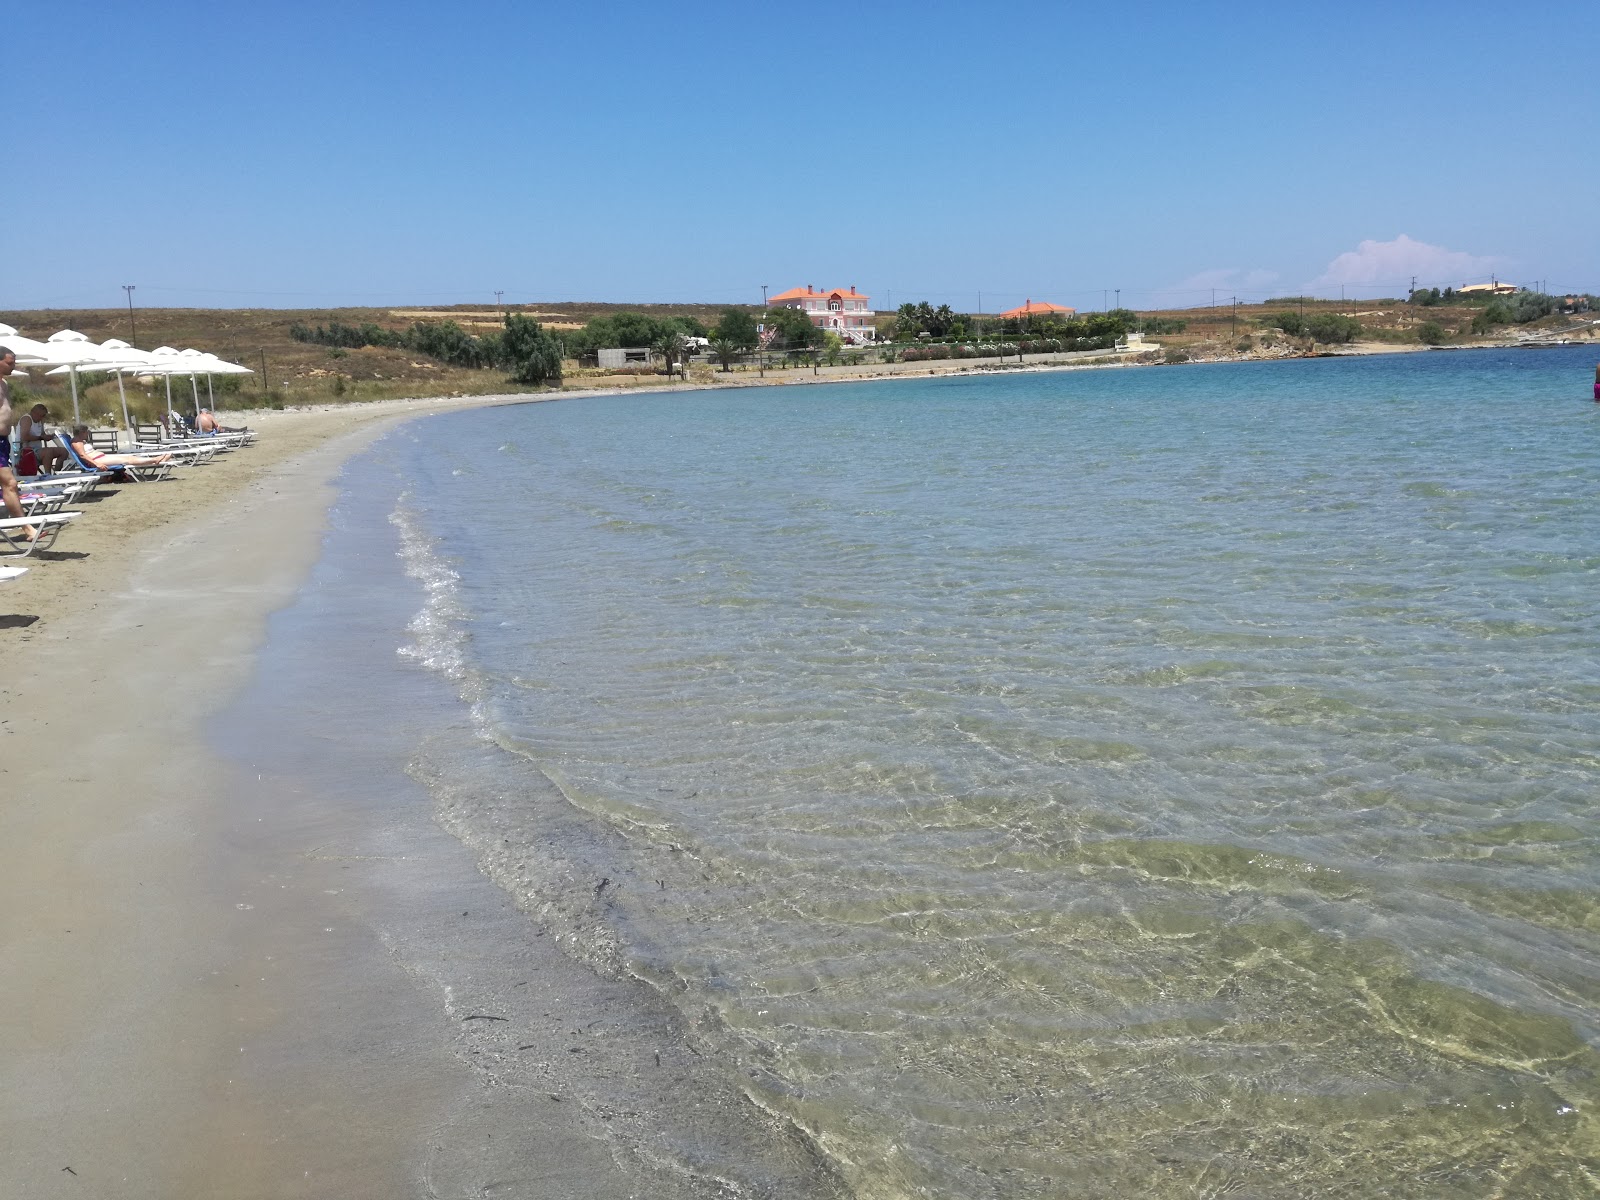 Fotografie cu Kotsinas beach cu o suprafață de apa pură turcoaz